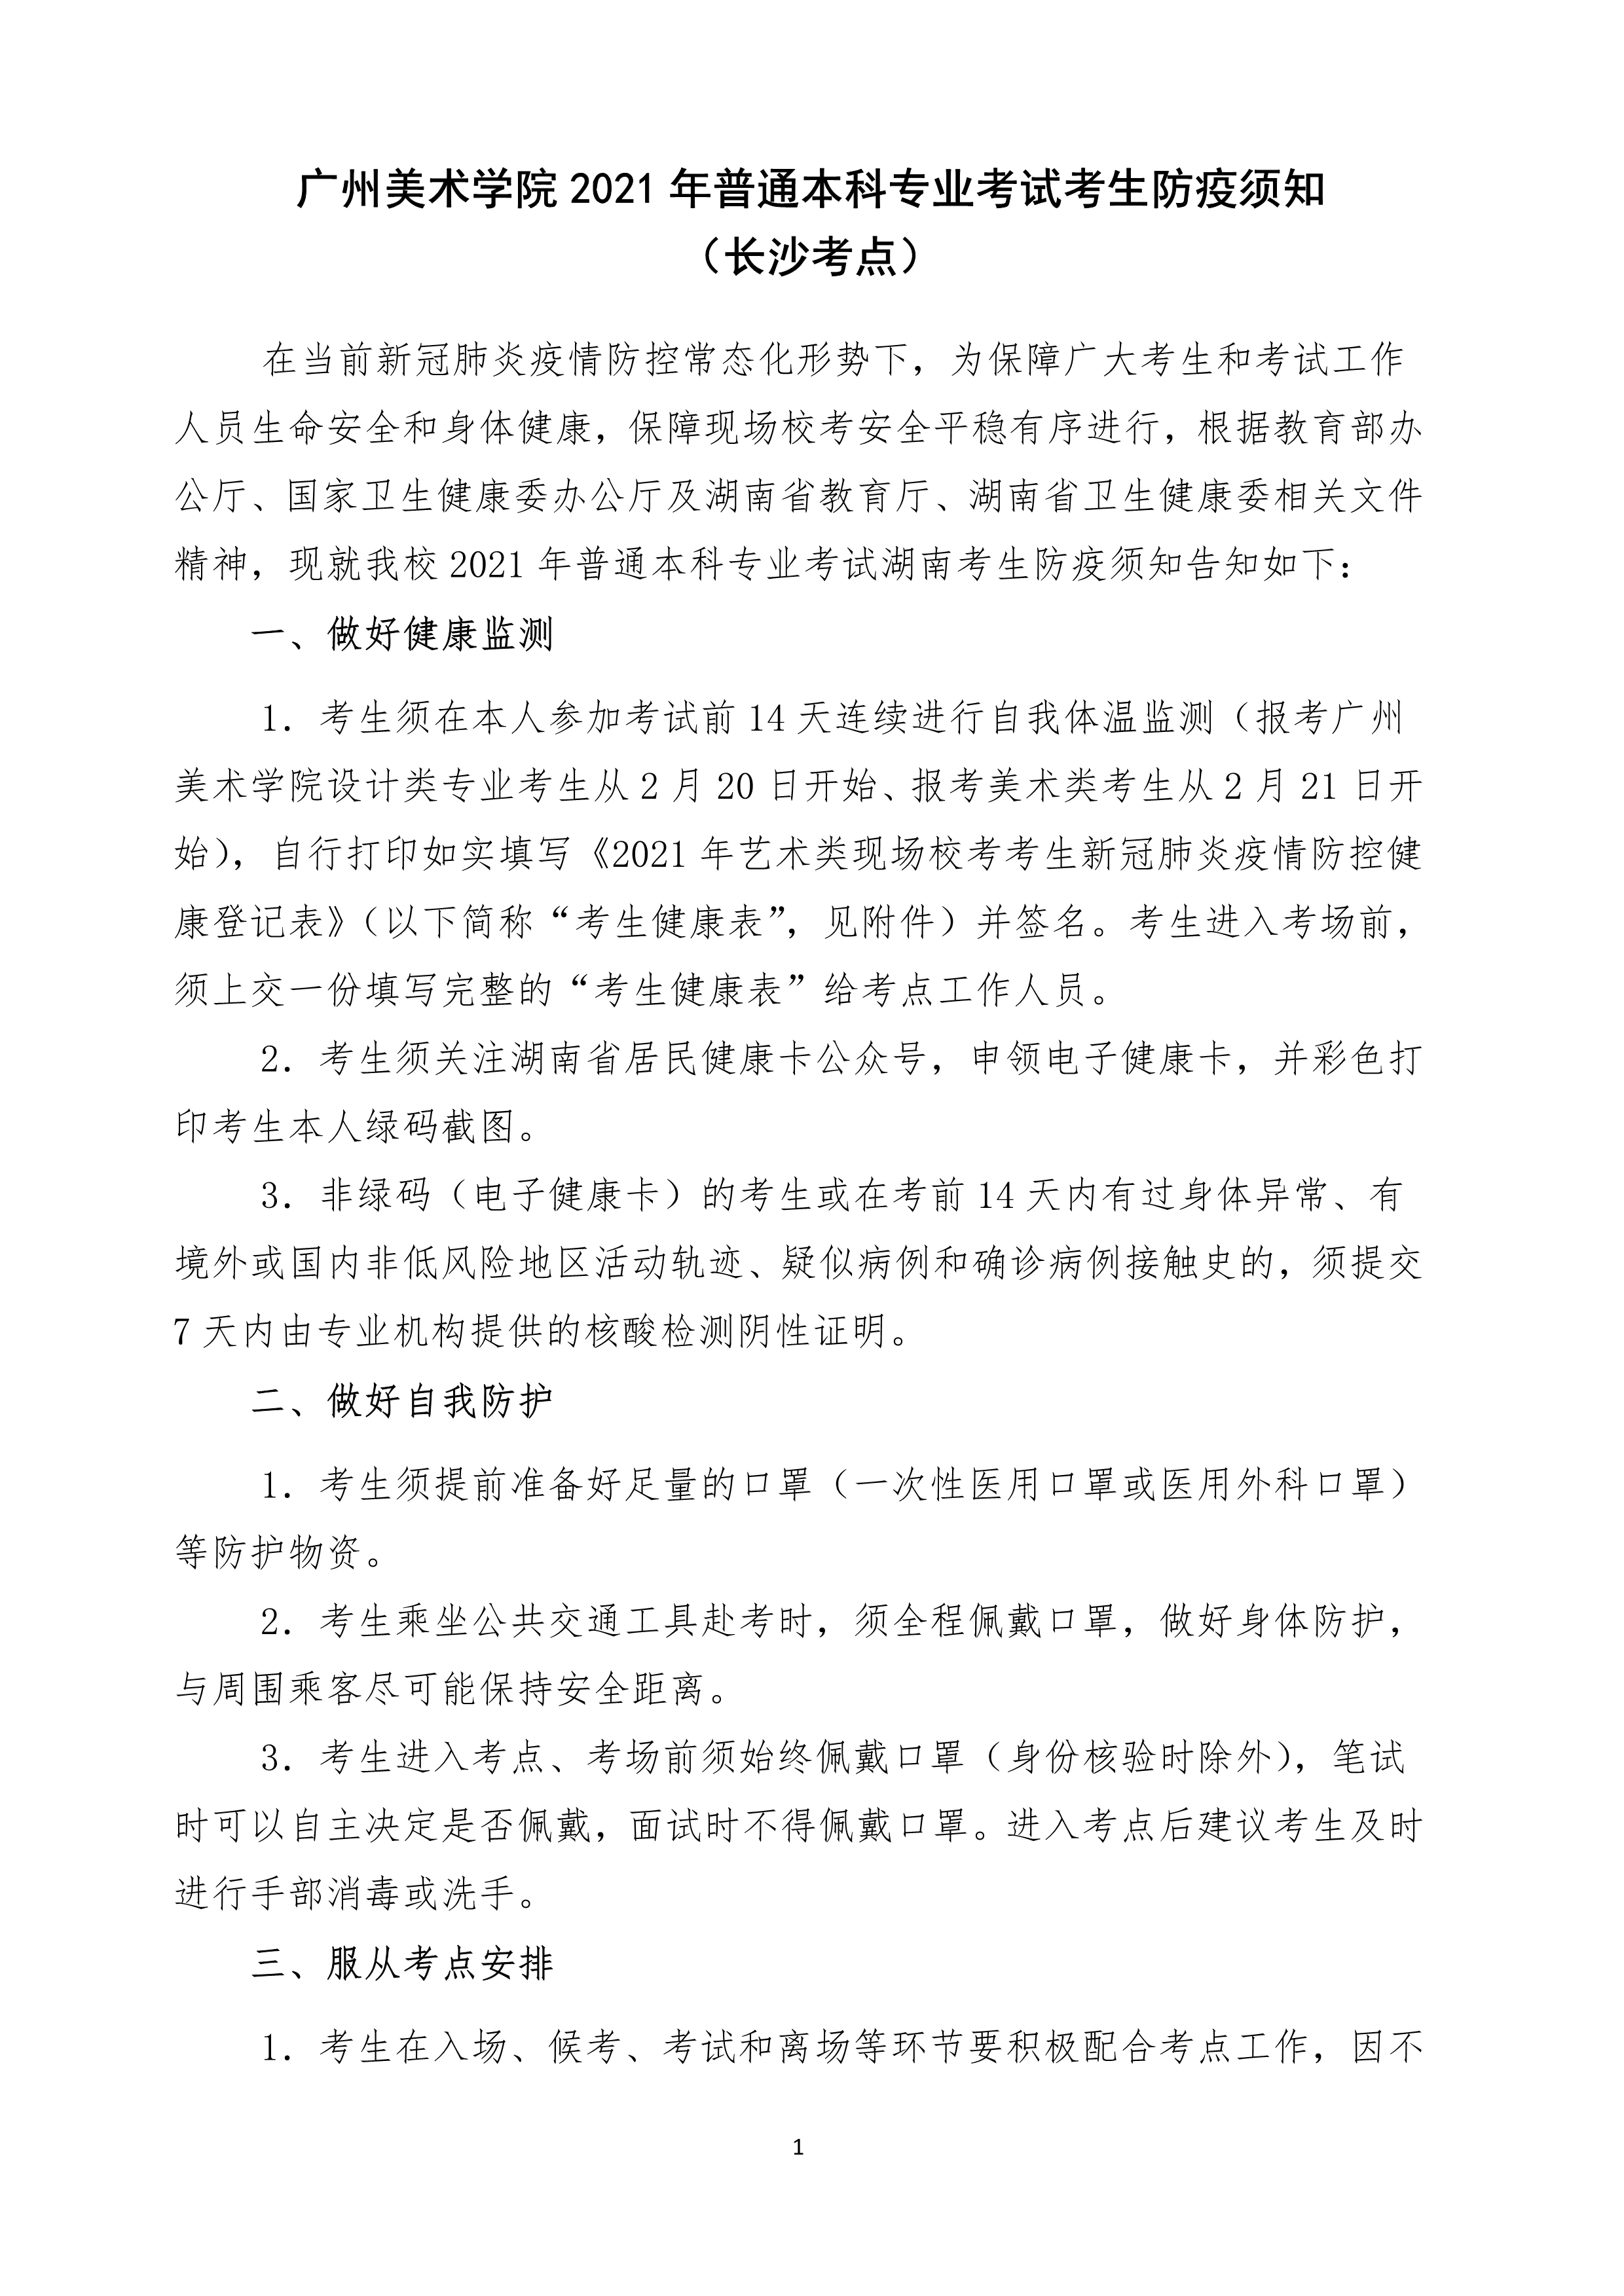 附件2：广州美术学院2021年普通本科专业考试考生防疫须知（长沙考点）_1.png